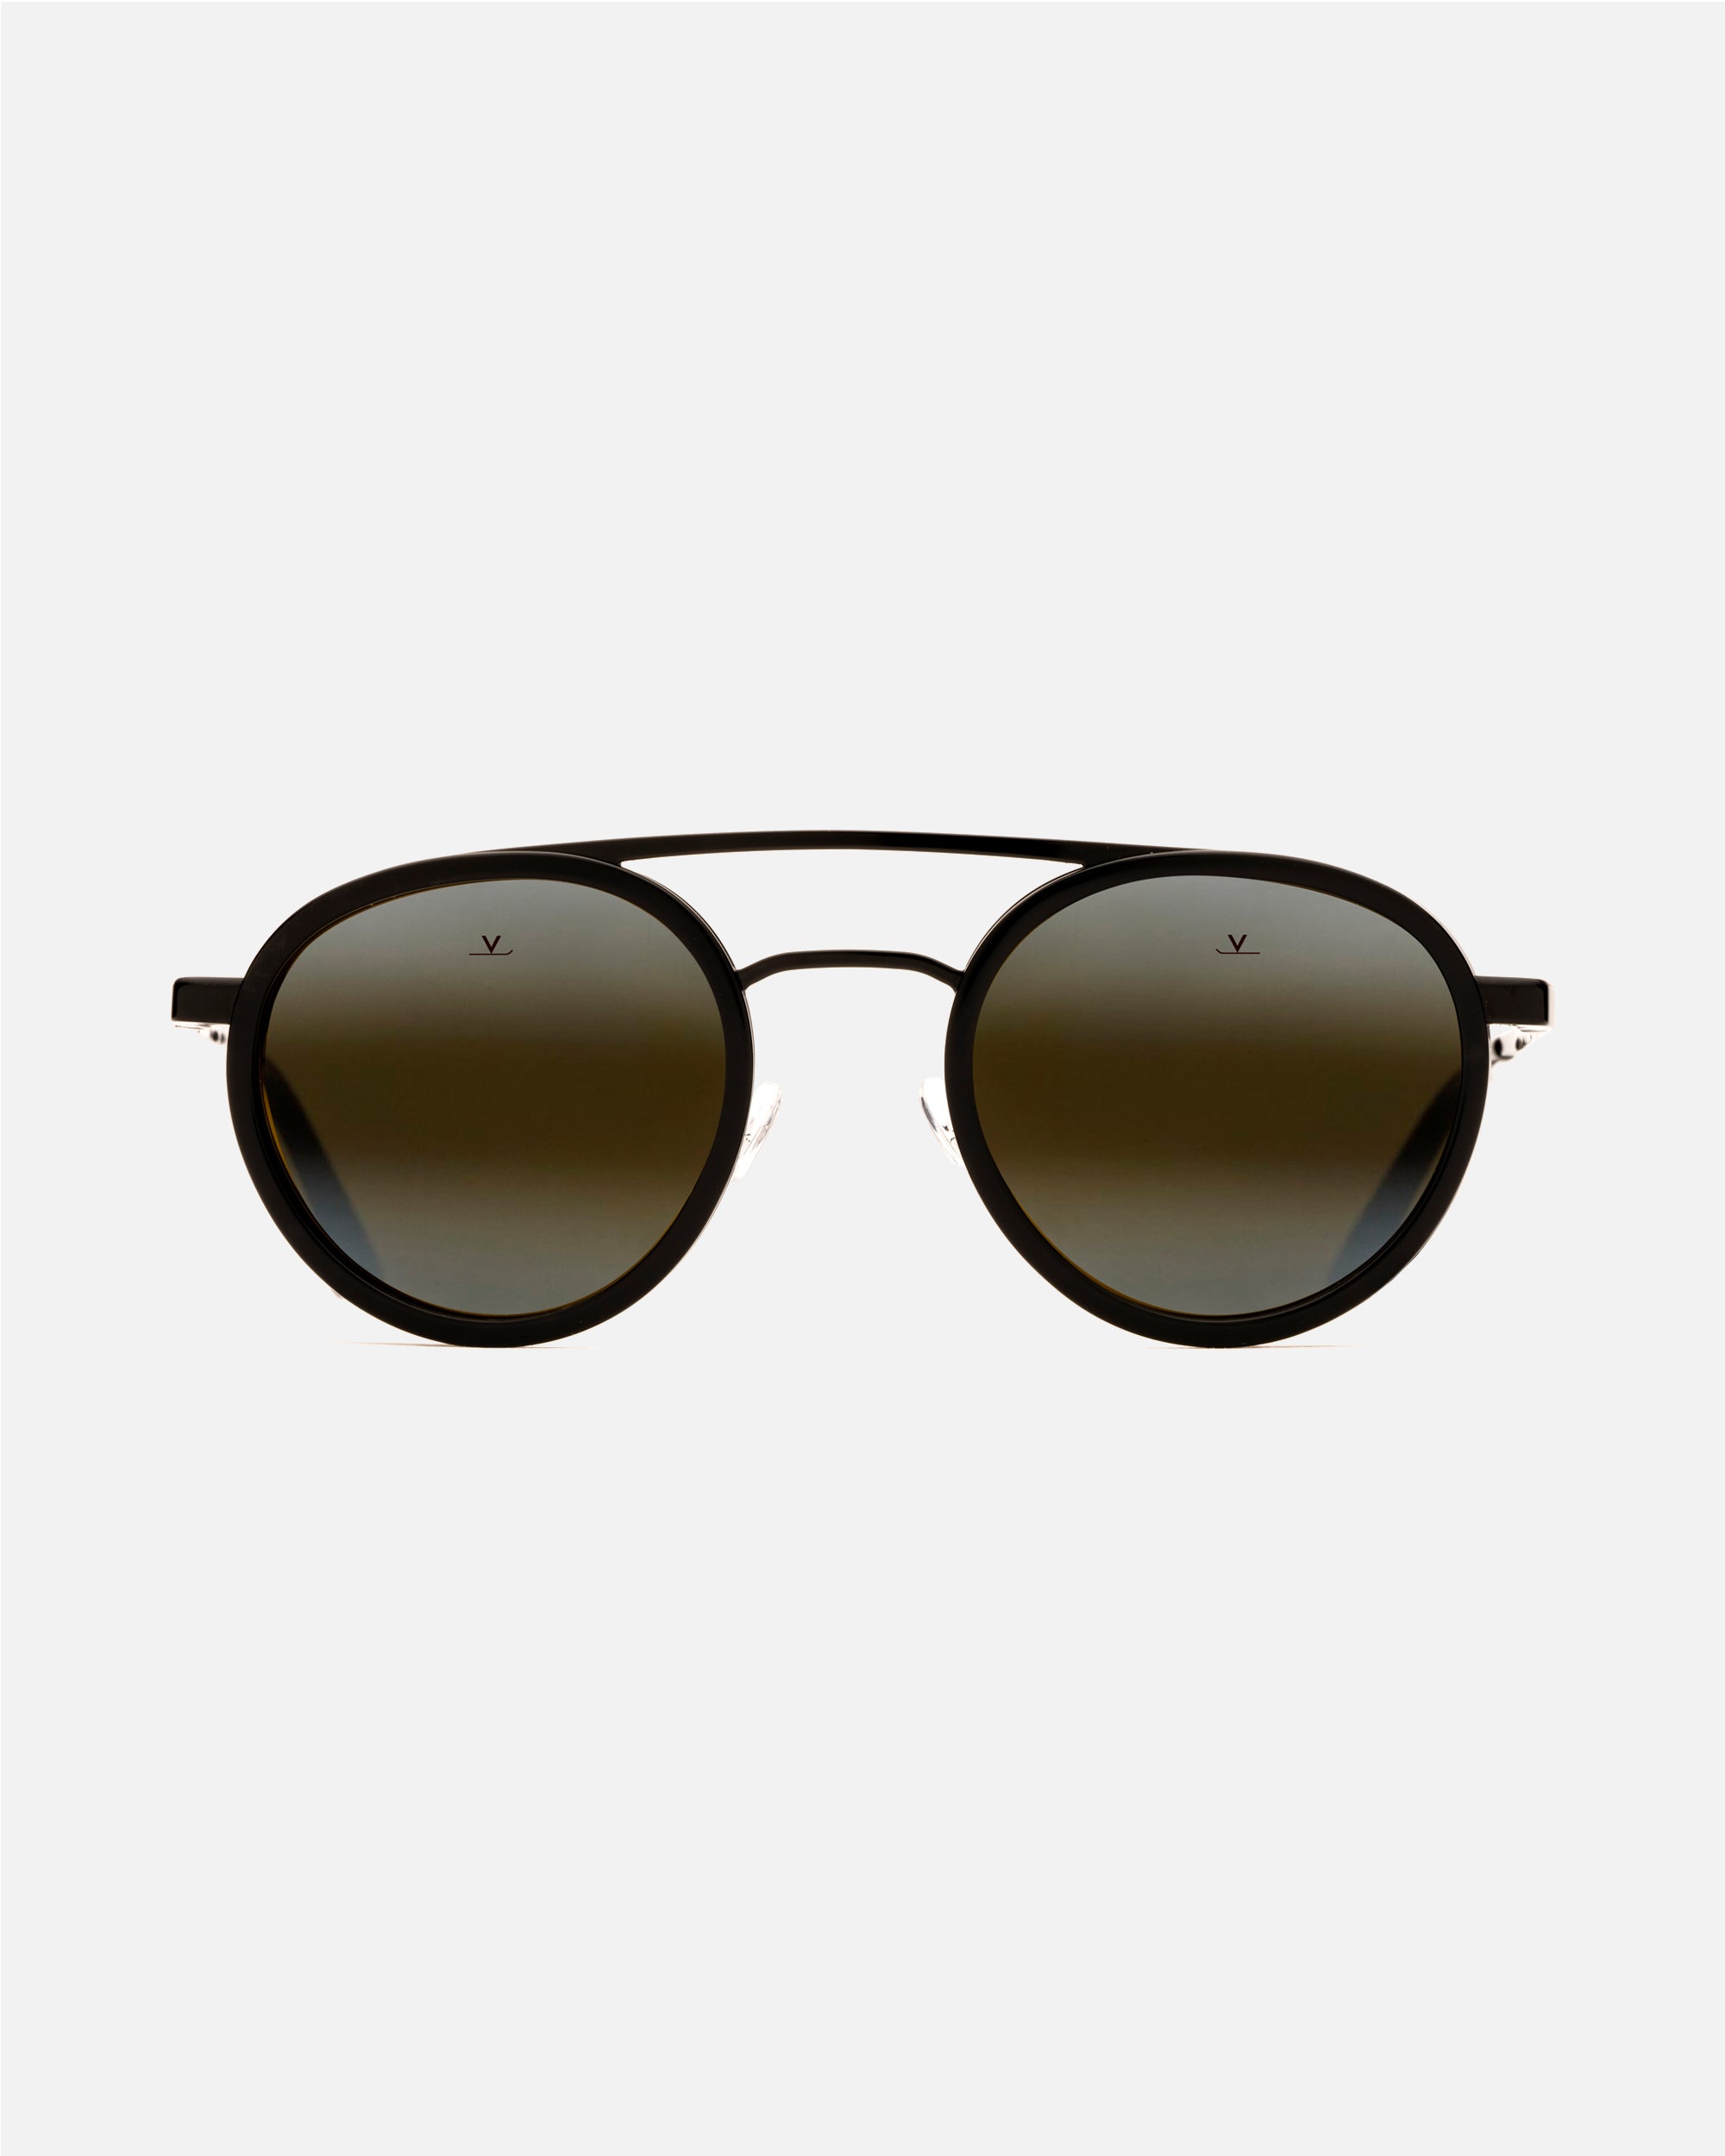 Vuarnet VL 1101 Sunglasses | FREE Shipping - Go-Optic.com